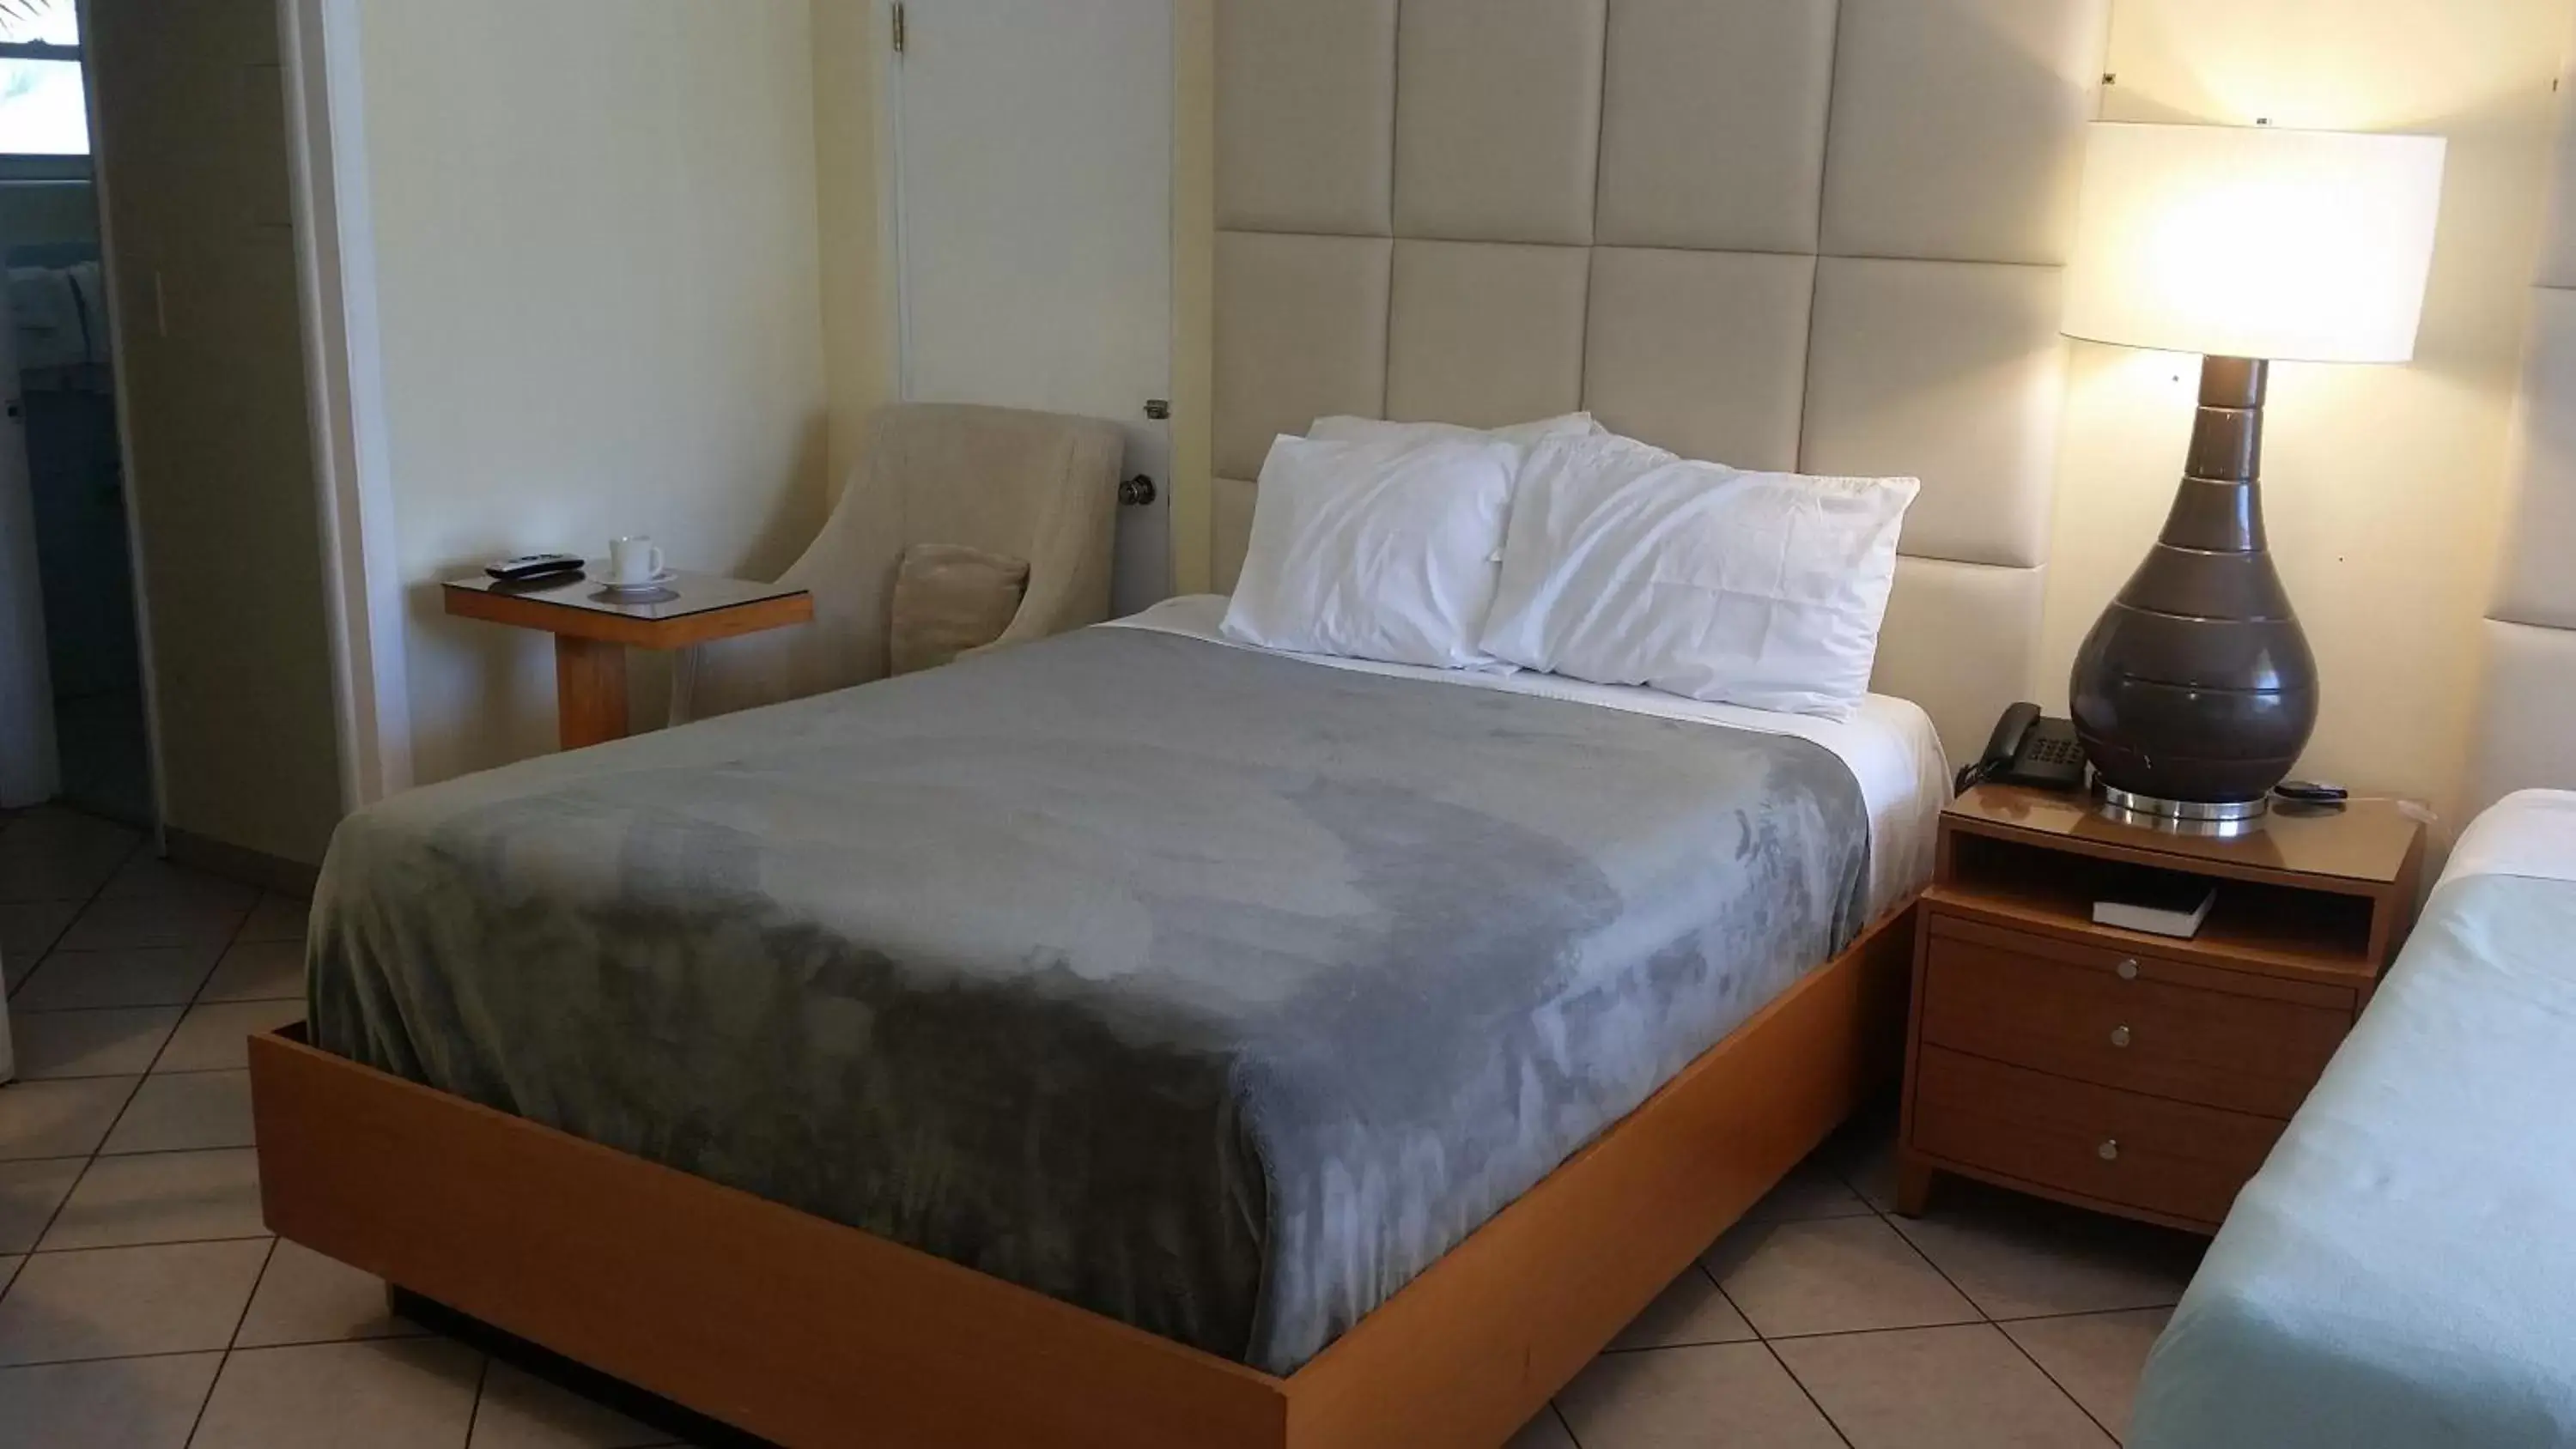 Bed, Room Photo in Ocean Mile Hotel